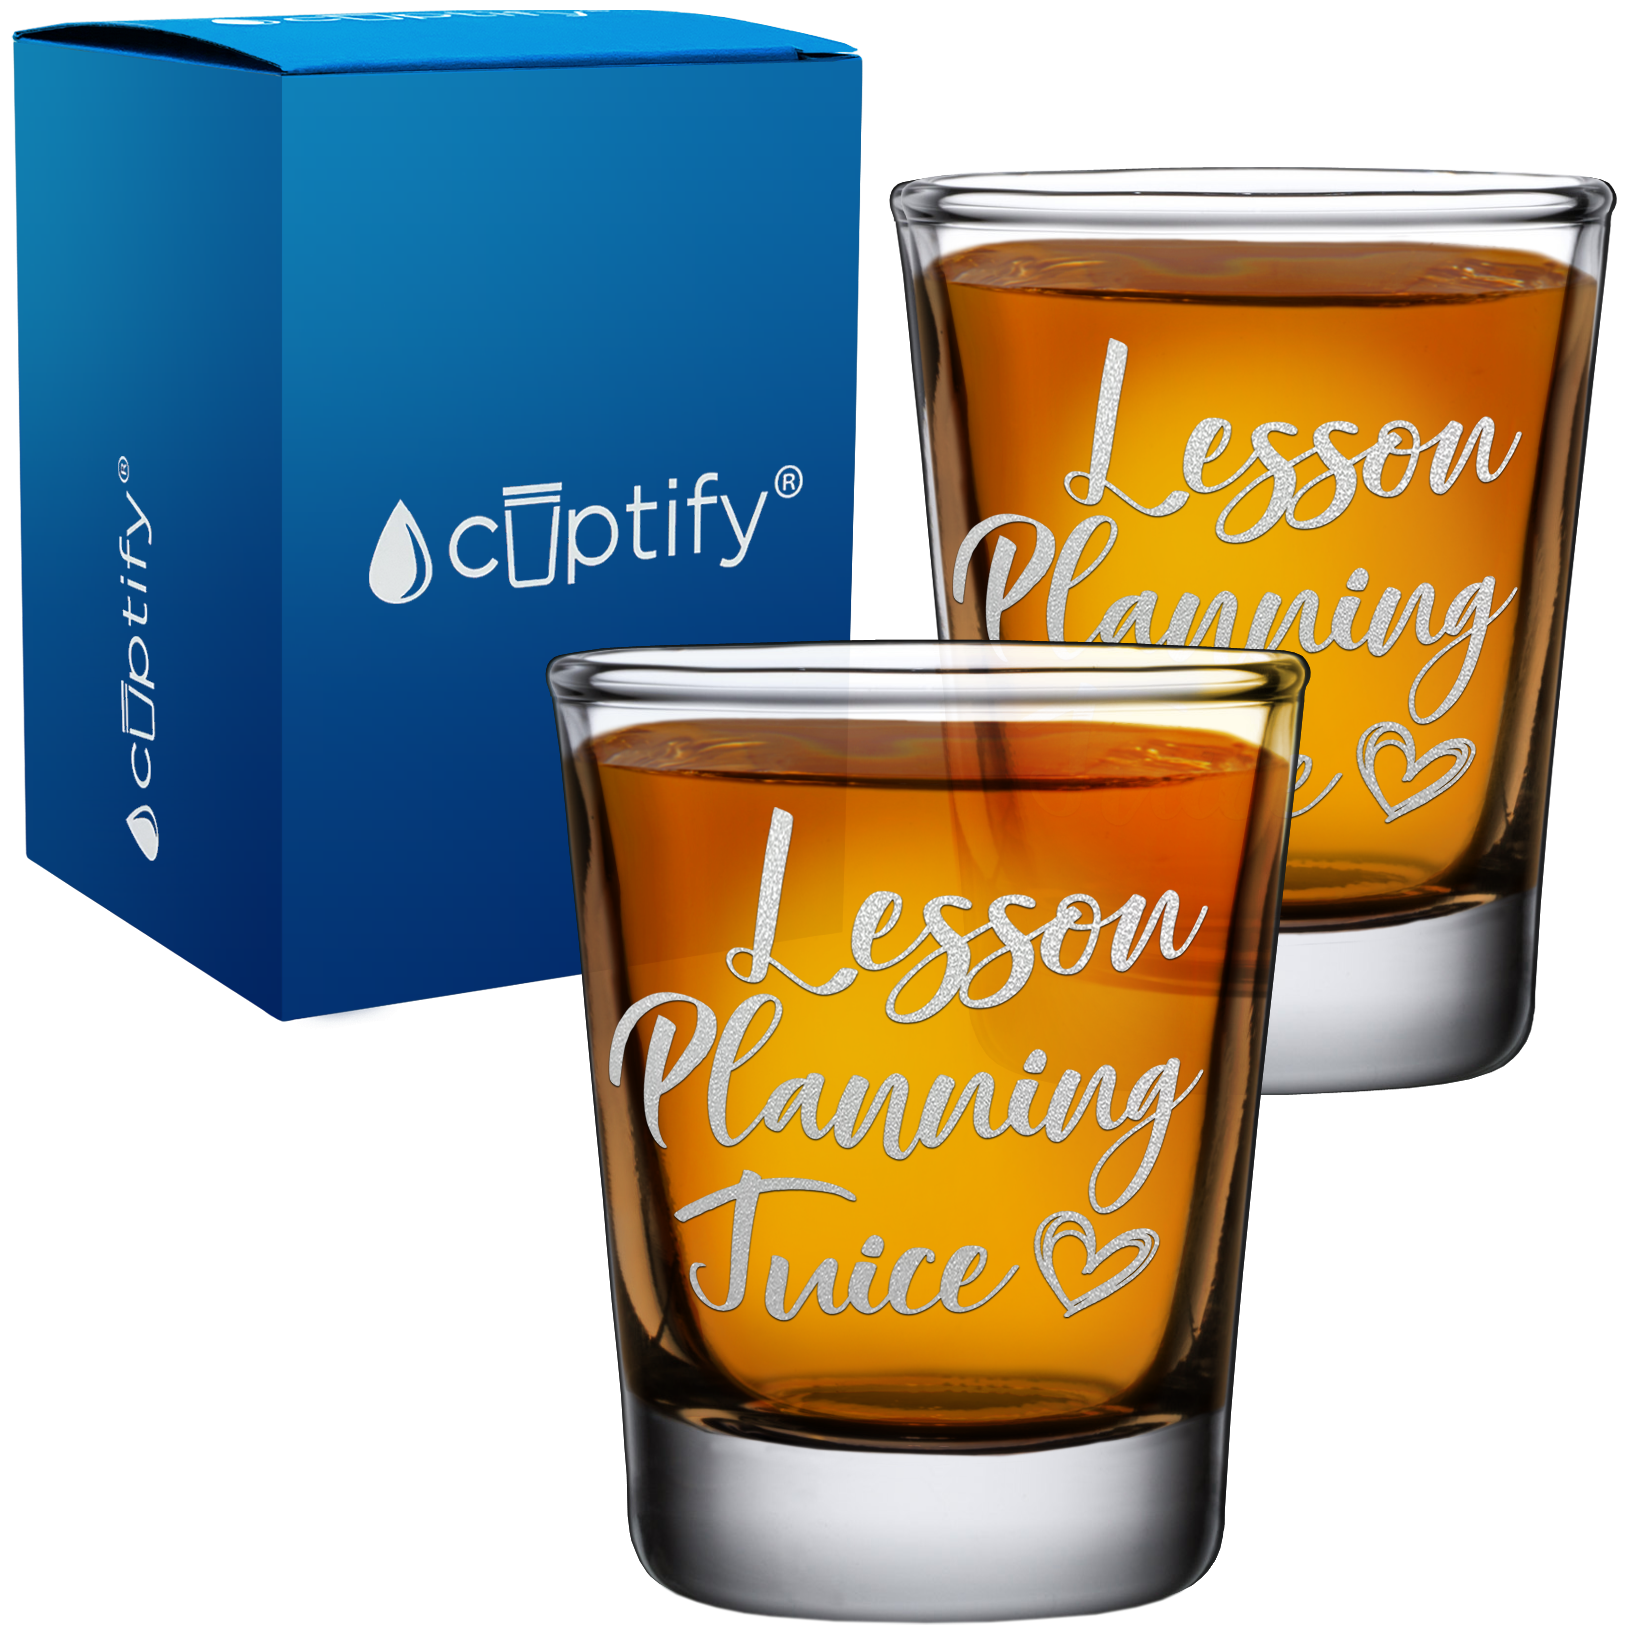 Lesson Planning Juice on 2oz Shot Glasses - Set of 2